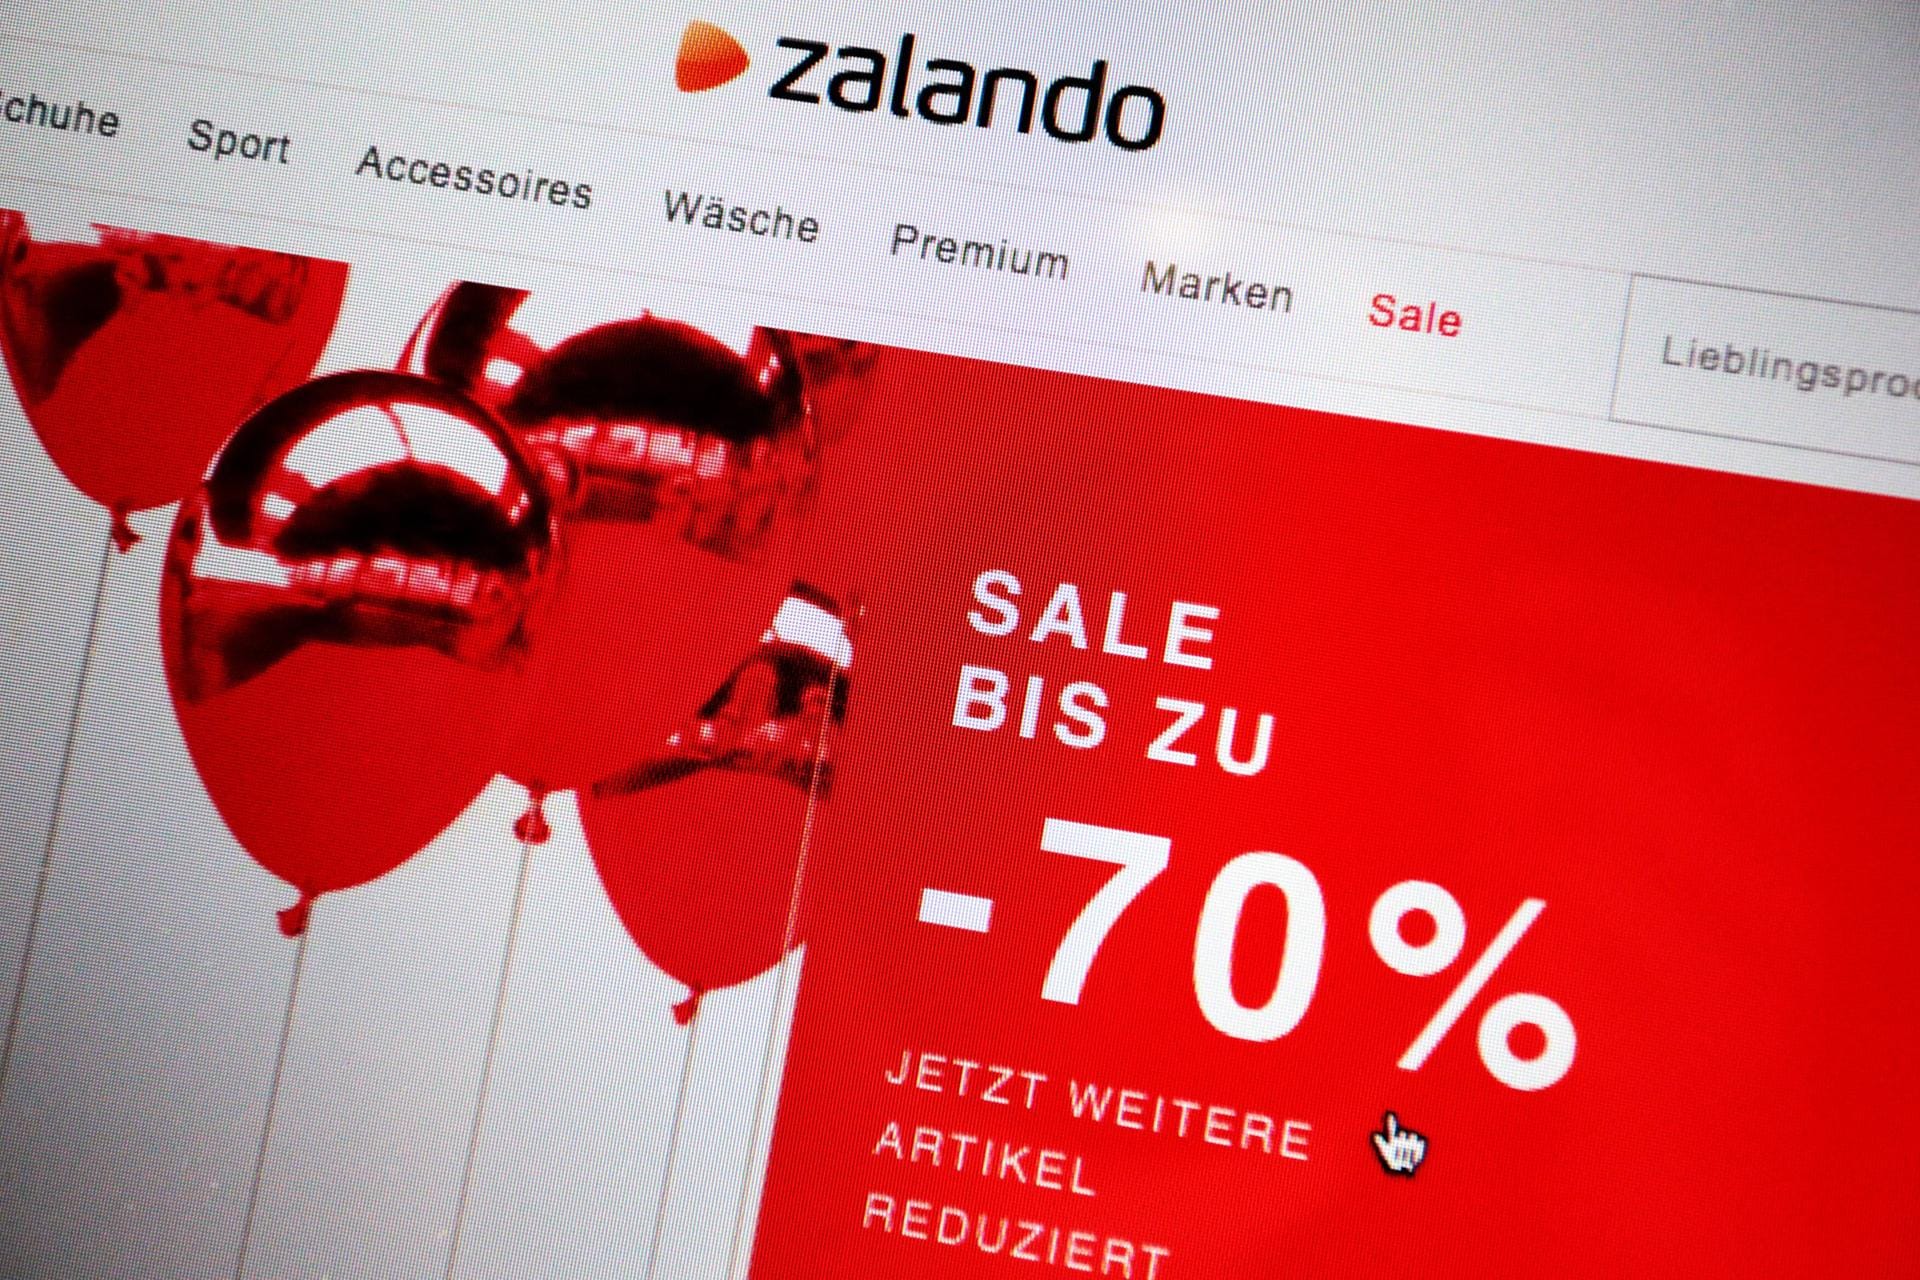 Rabatt von 70% wird auf der Webseite von Zalando beworben